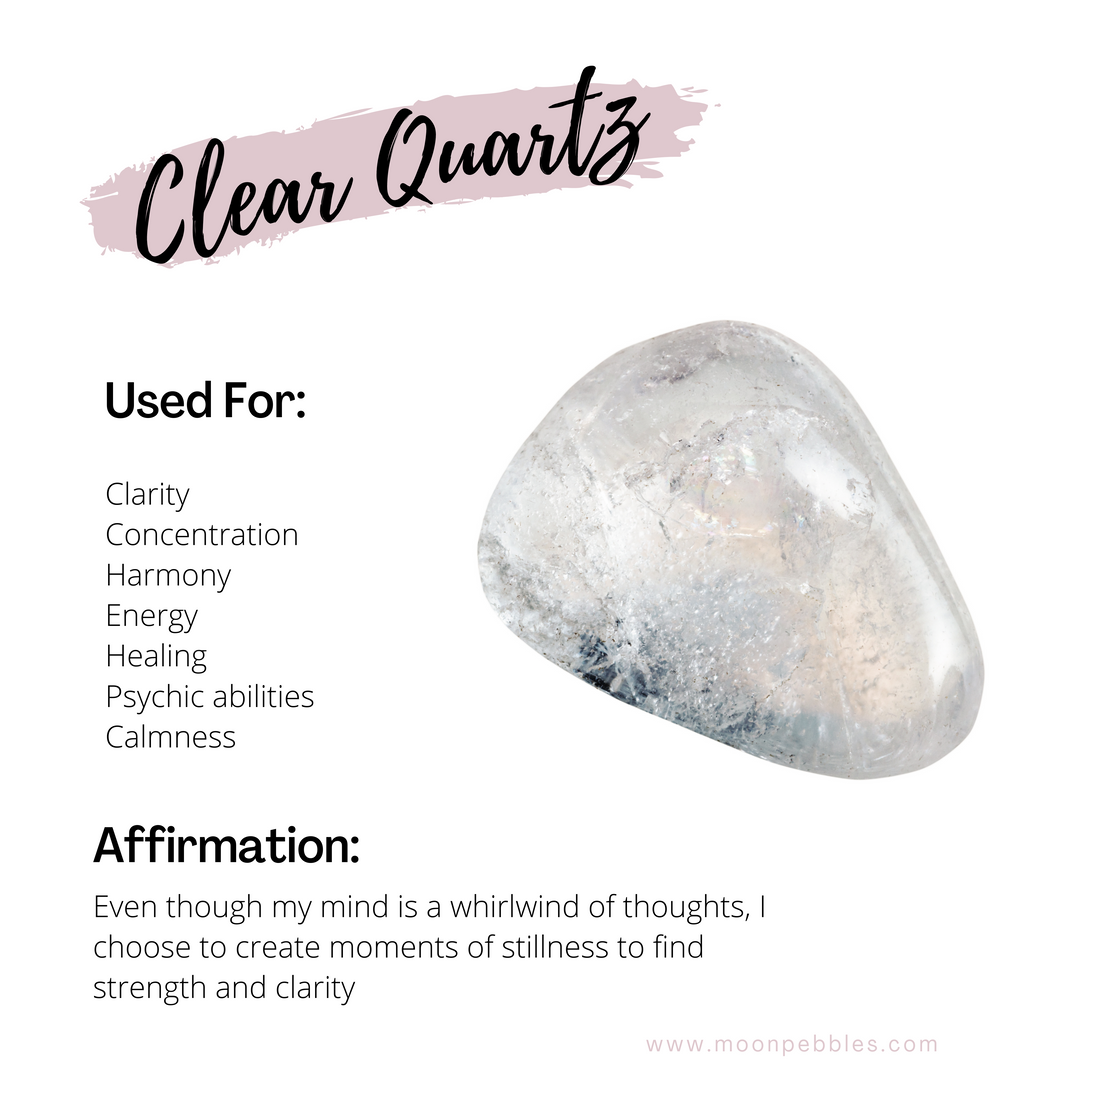 https://moonpebbles.com/collections/clear-quartz